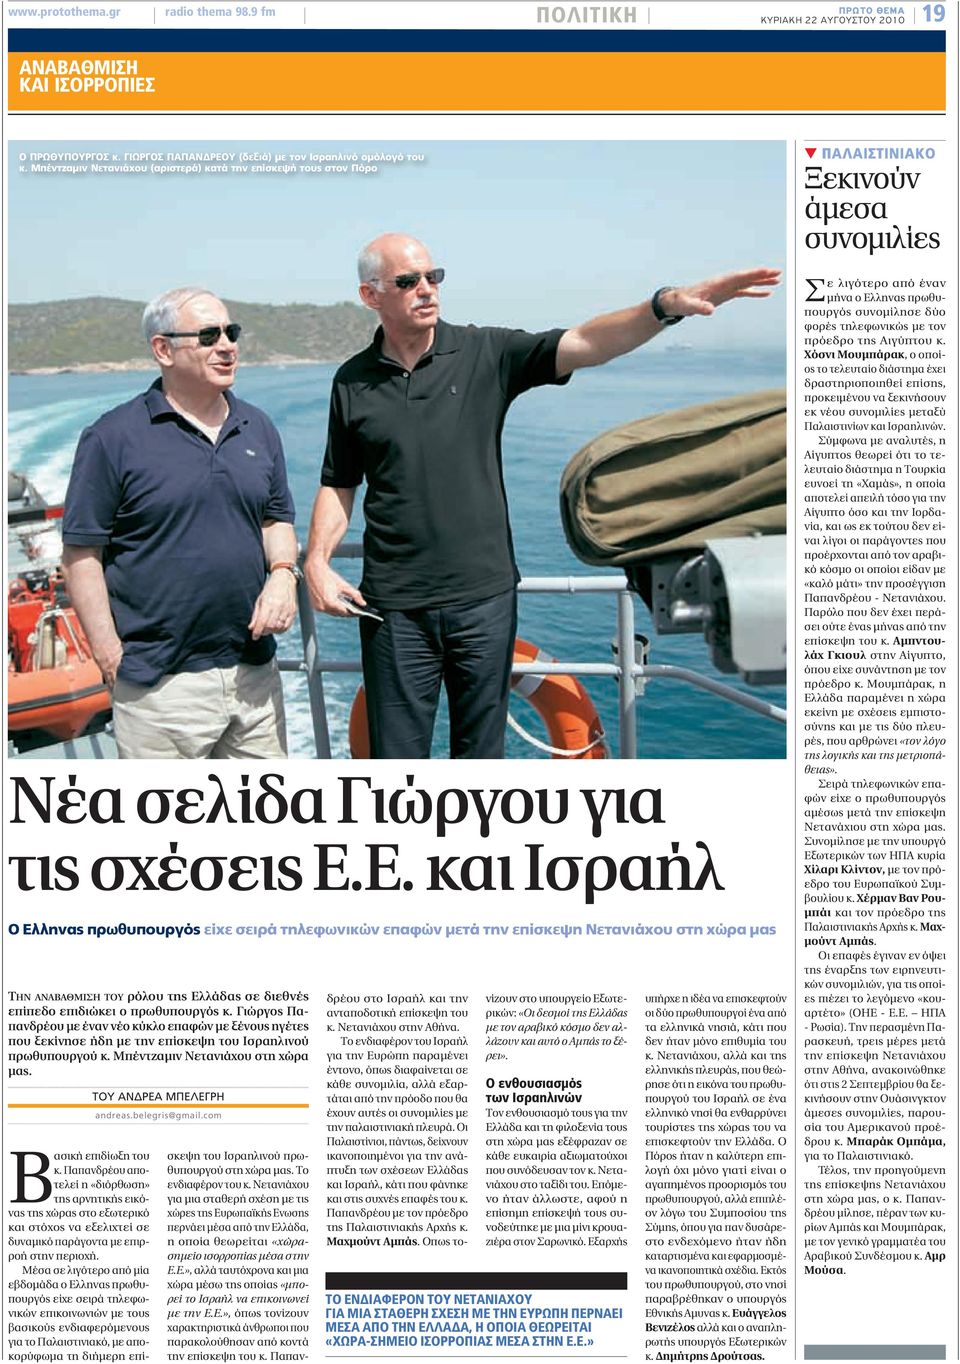 Ε. και Ισραήλ Ο Ελληνας πρωθυπουργός είχε σειρά τηλεφωνικών επαφών μετά την επίσκεψη Νετανιάχου στη χώρα μας ΤΗΝ ΑΝΑΒΑΘΜΙΣΗ ΤΟΥ ρόλου της Ελλάδας σε διεθνές επίπεδο επιδιώκει ο πρωθυπουργός κ.